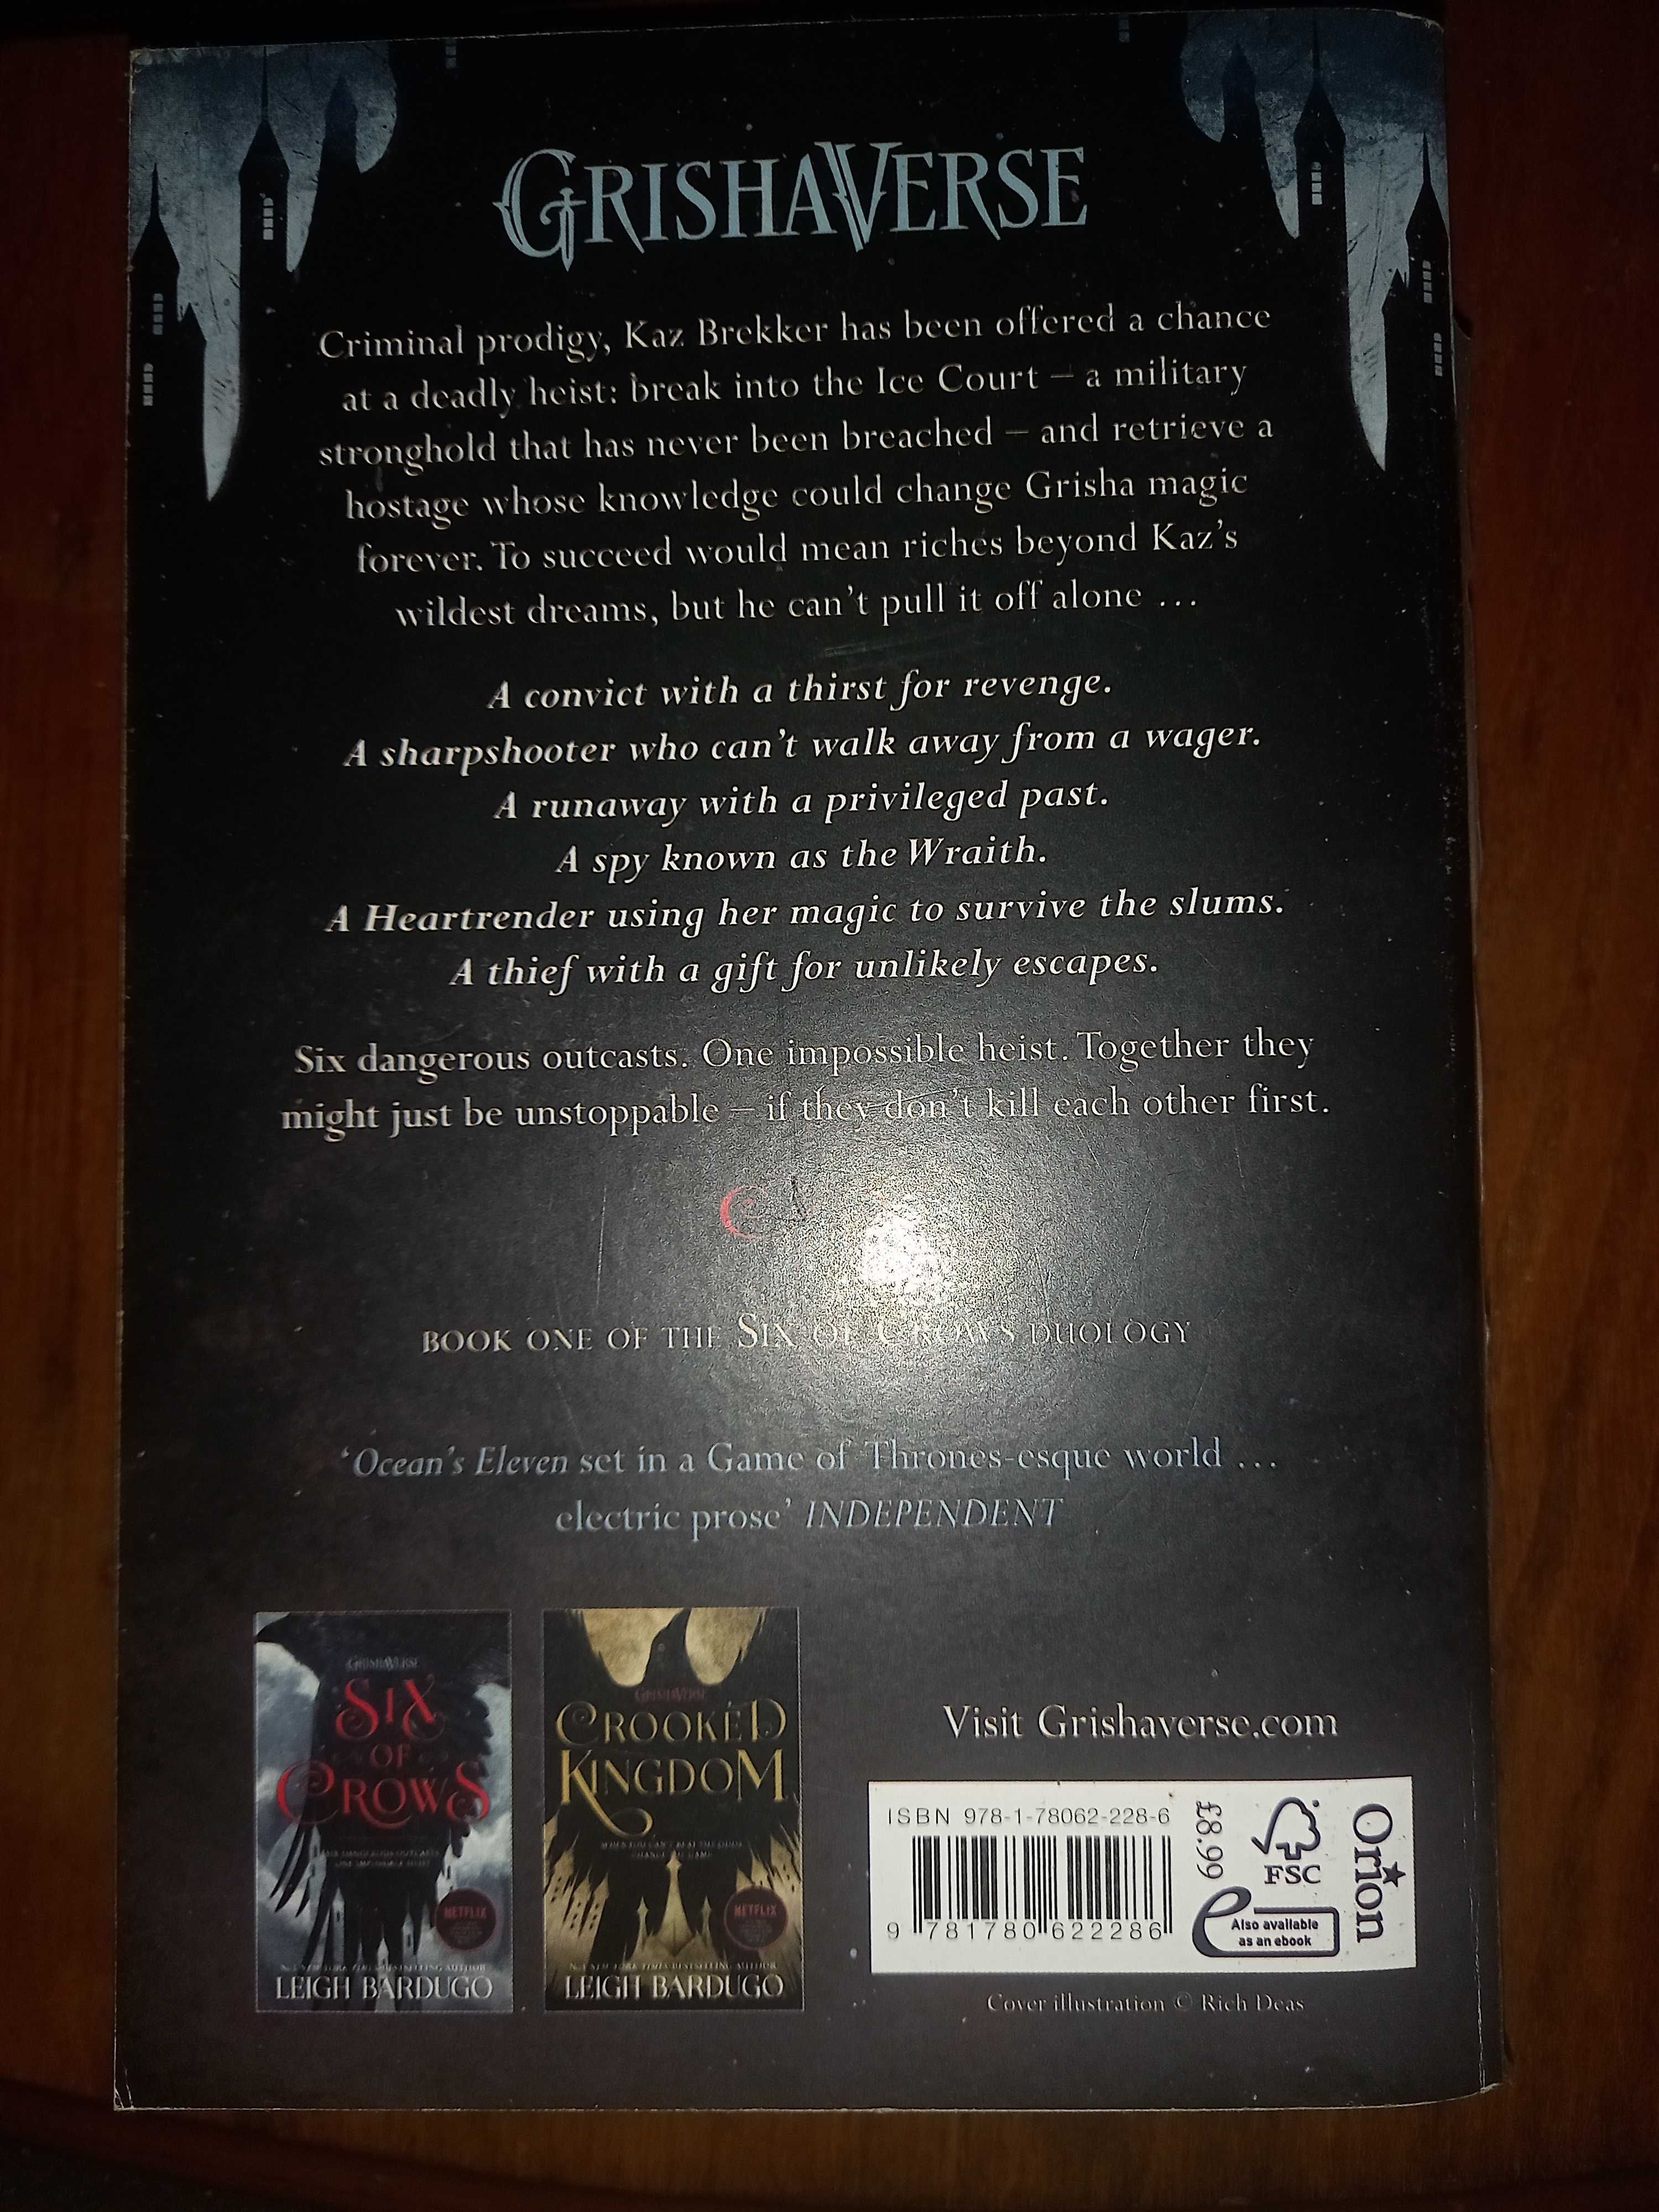 Vendo o livro "Six of Crows" da Leigh Bardugo